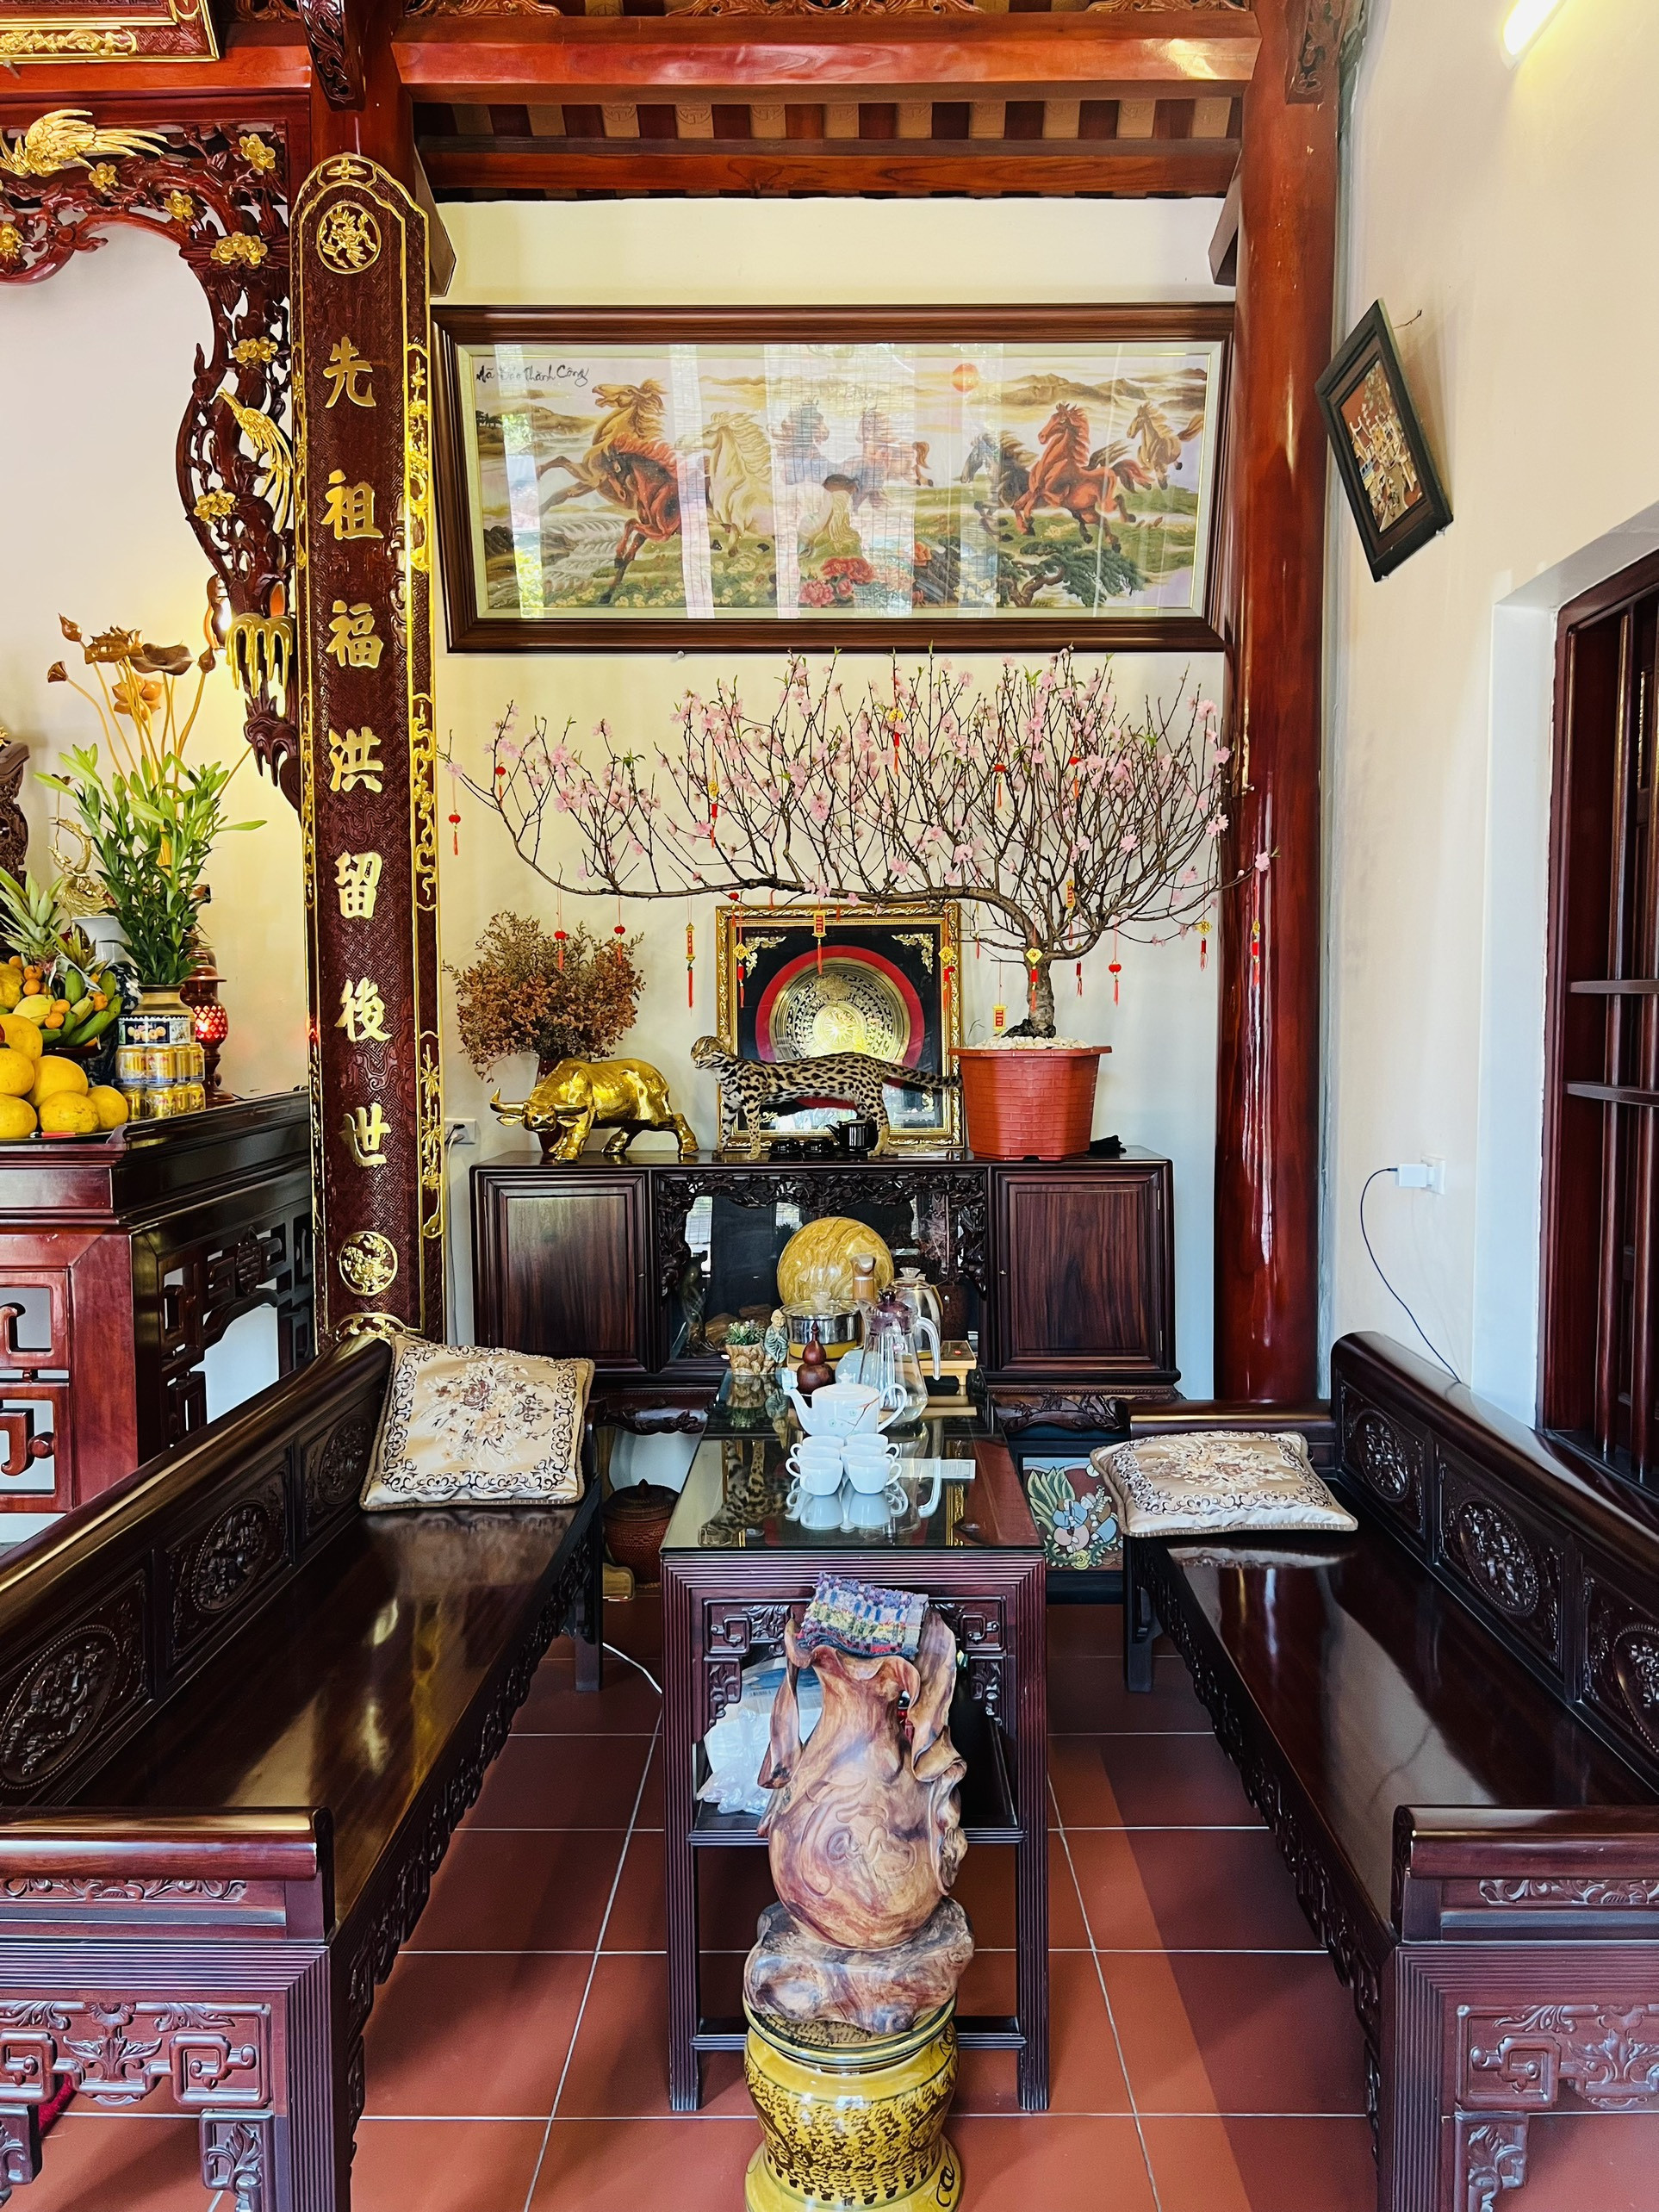 Căn nhà nhỏ xinh vui sống đời độc thân của ca sĩ Hồ Quang 8 ở quê